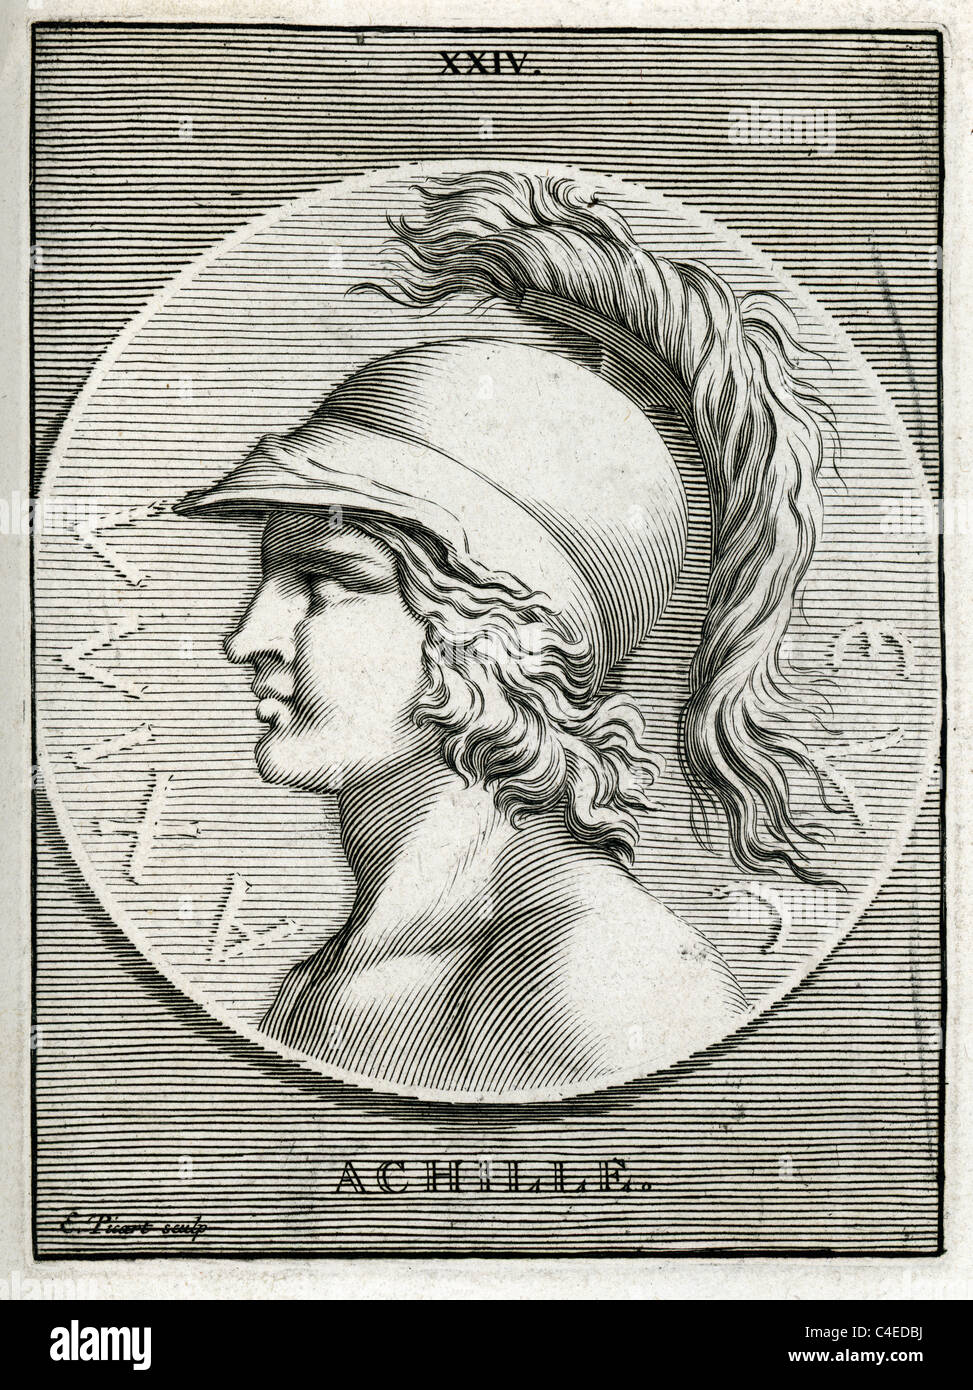 Achilles: The Greatest Hero of Greek Mythology?